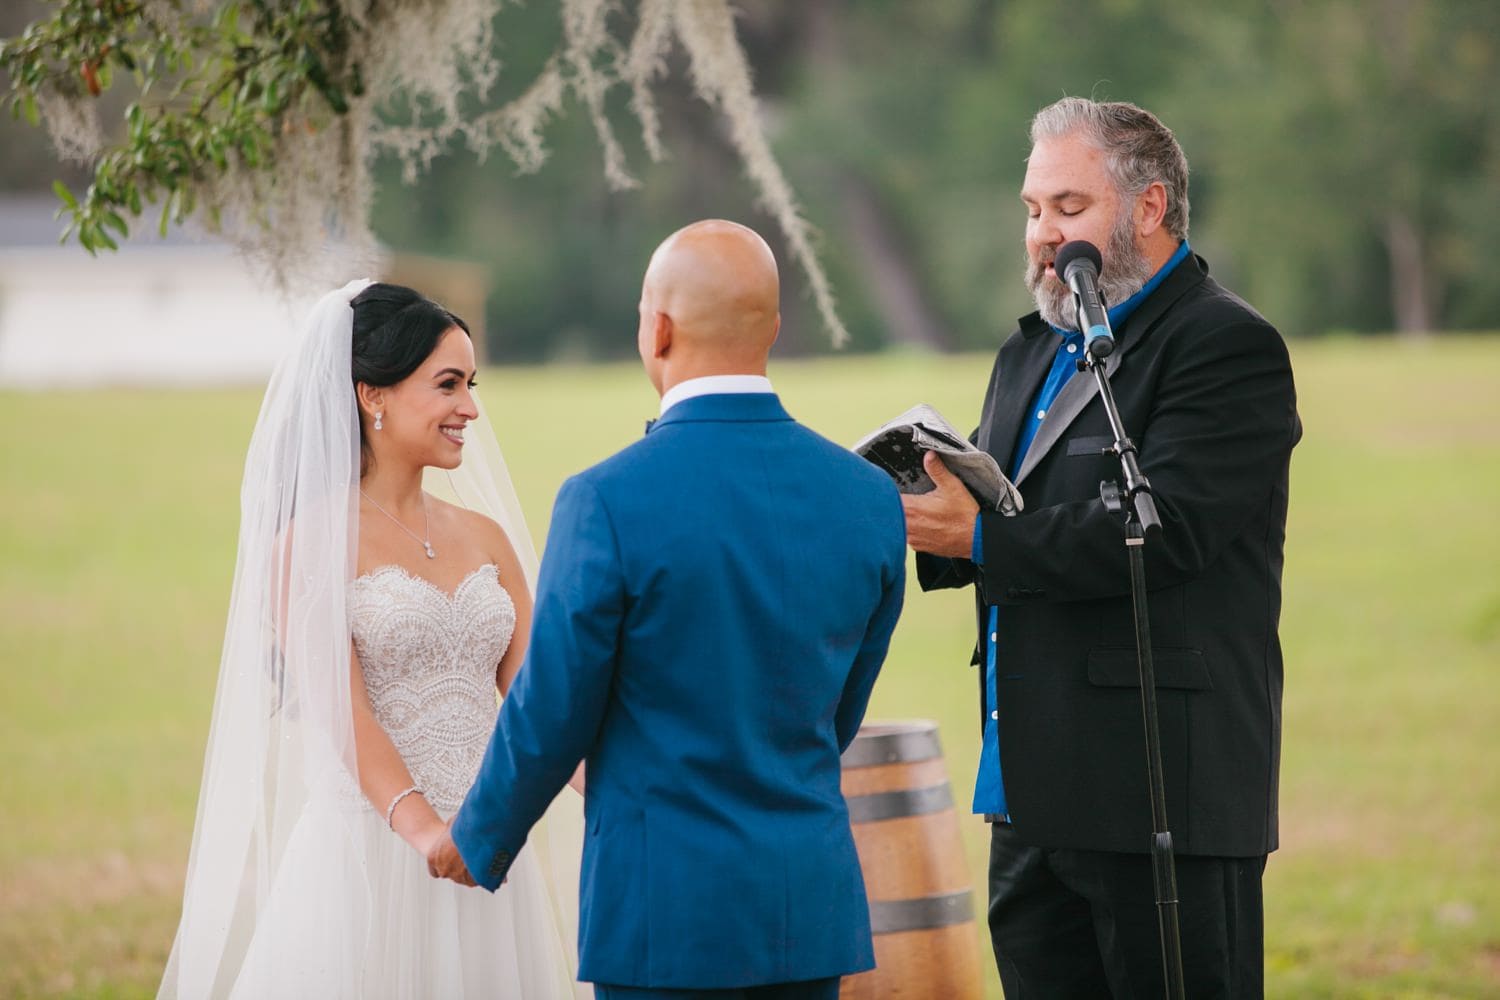 Wedding Ceremony at October Oaks Farm in Orlando, Fl.